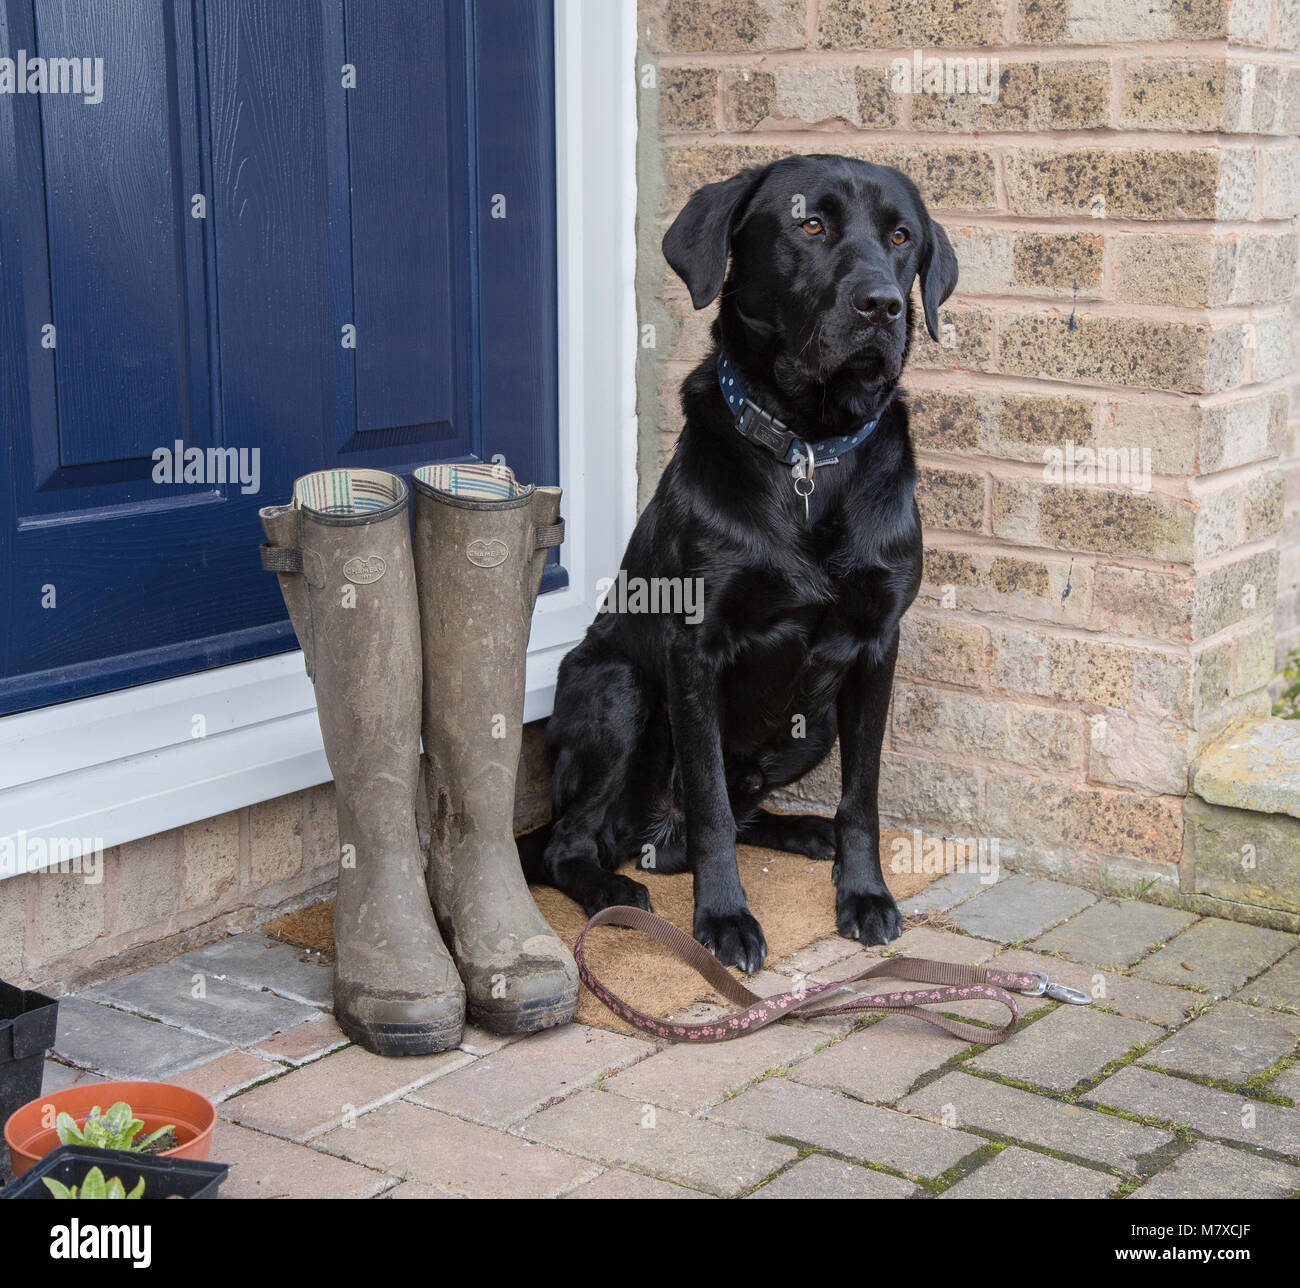 Un labrador nero è seduto su una porta con un cane piombo ai suoi piedi in attesa per una passeggiata. Il suo proprietario di stivali in gomma sono accanto a lui. Foto Stock